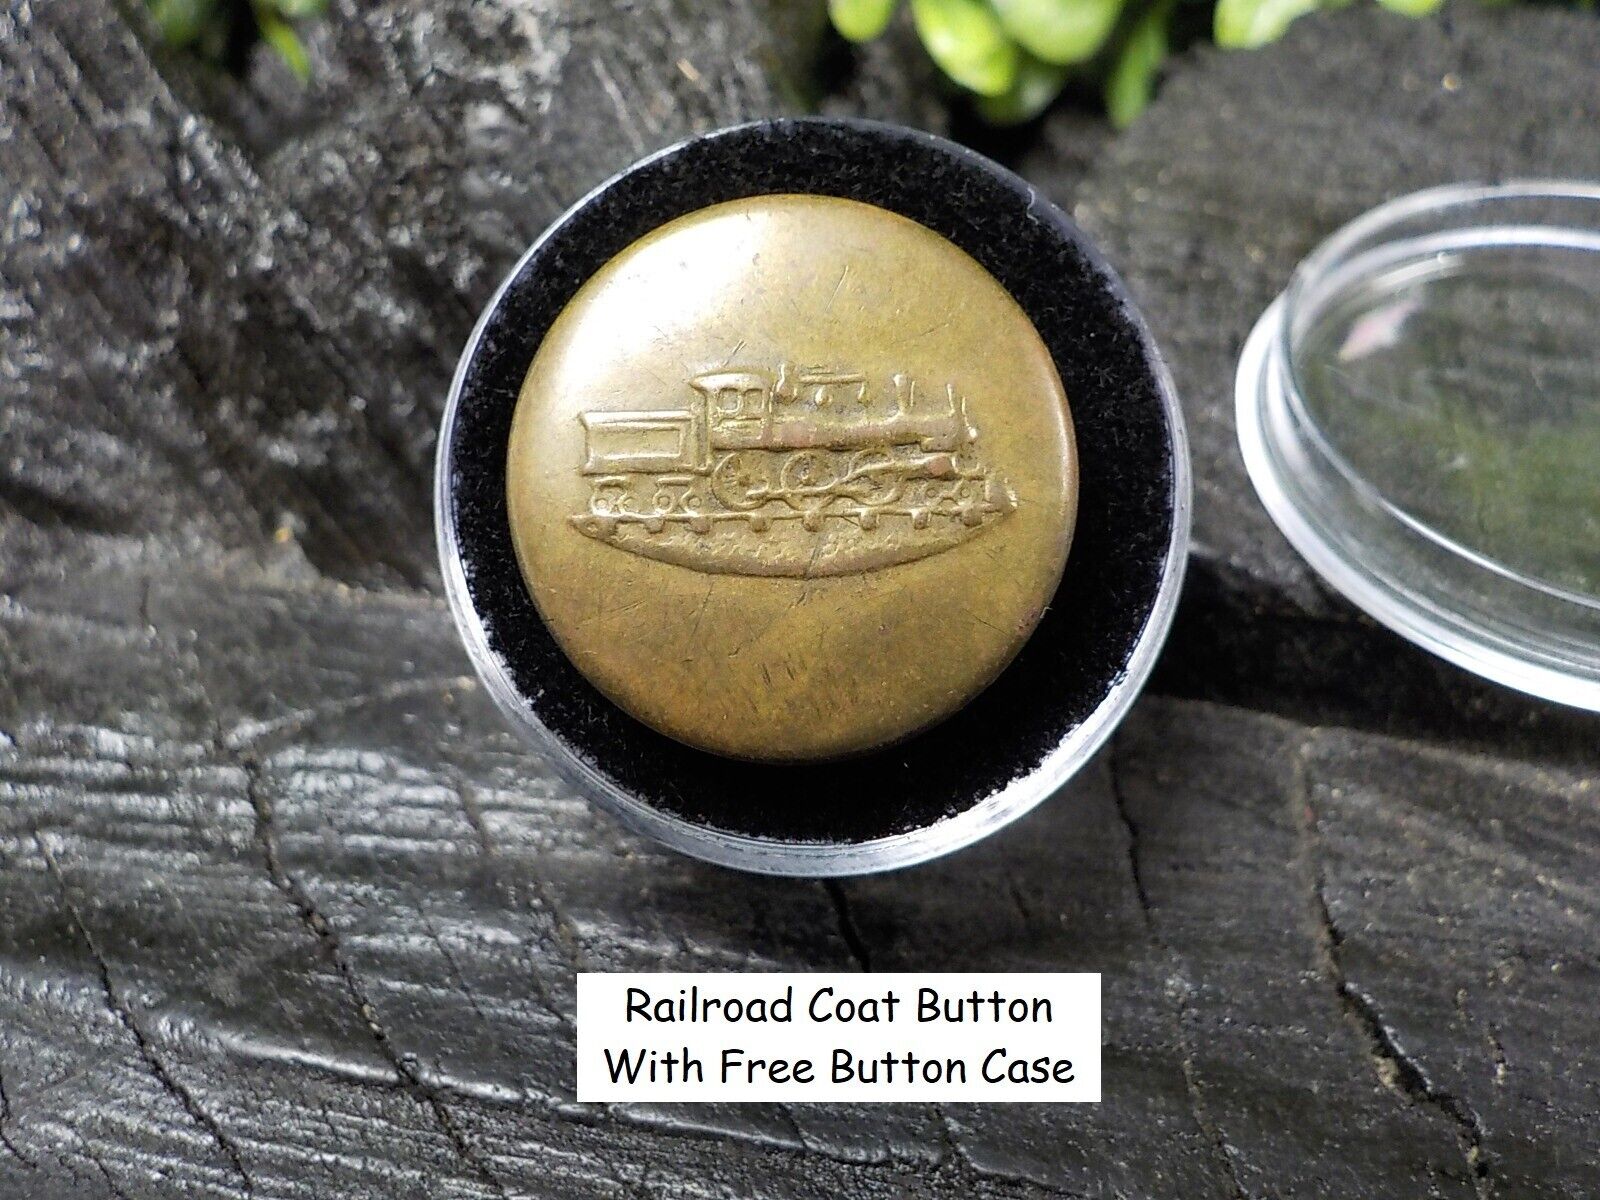 Old Rare Vintage Antique Railroad Emblem Coat Button Free Button Case